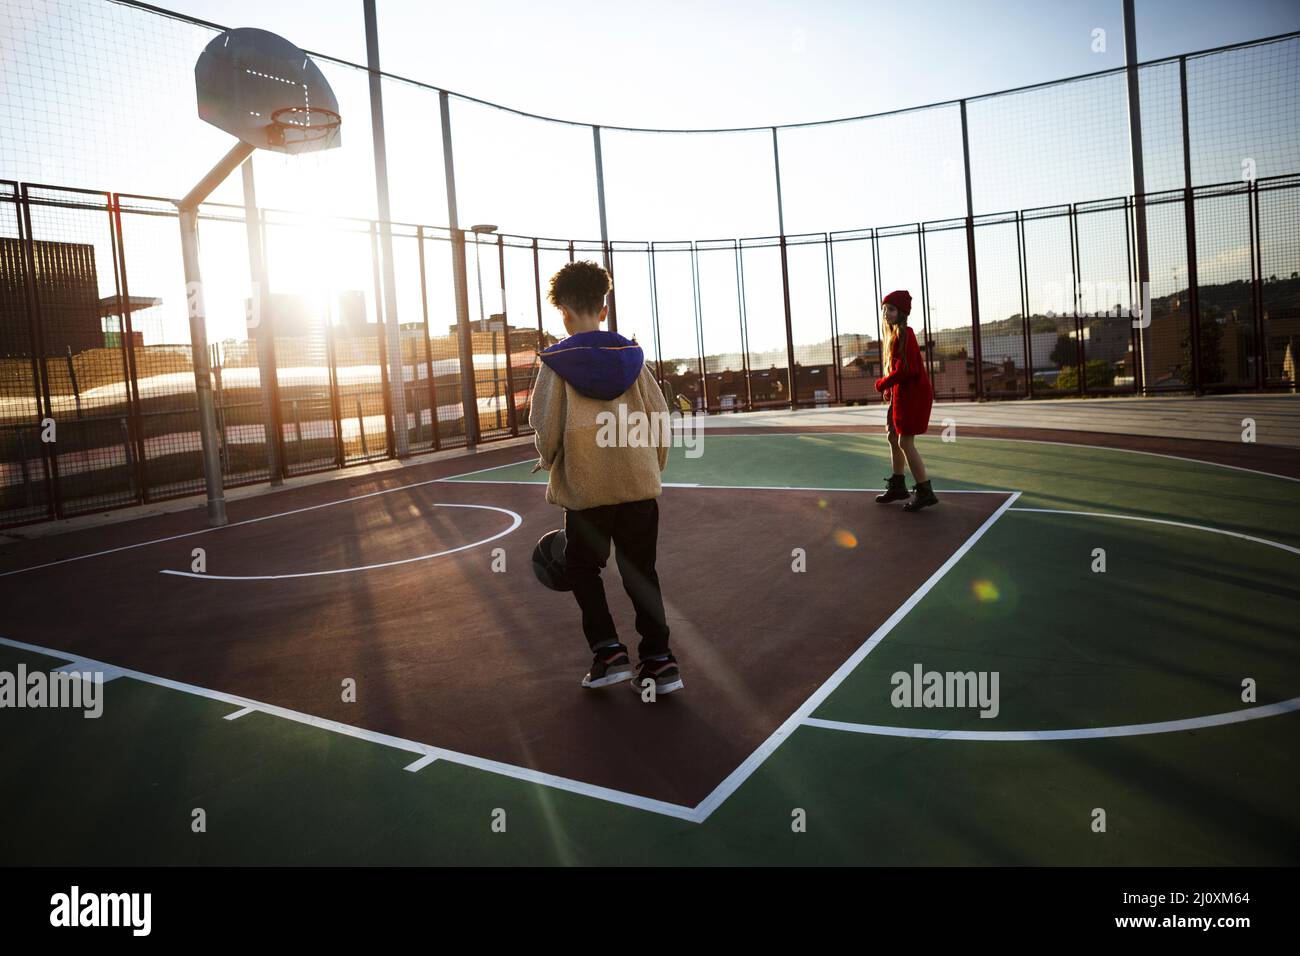 Kinder spielen Basketballfeld. Hochwertige Fotos Stockfoto